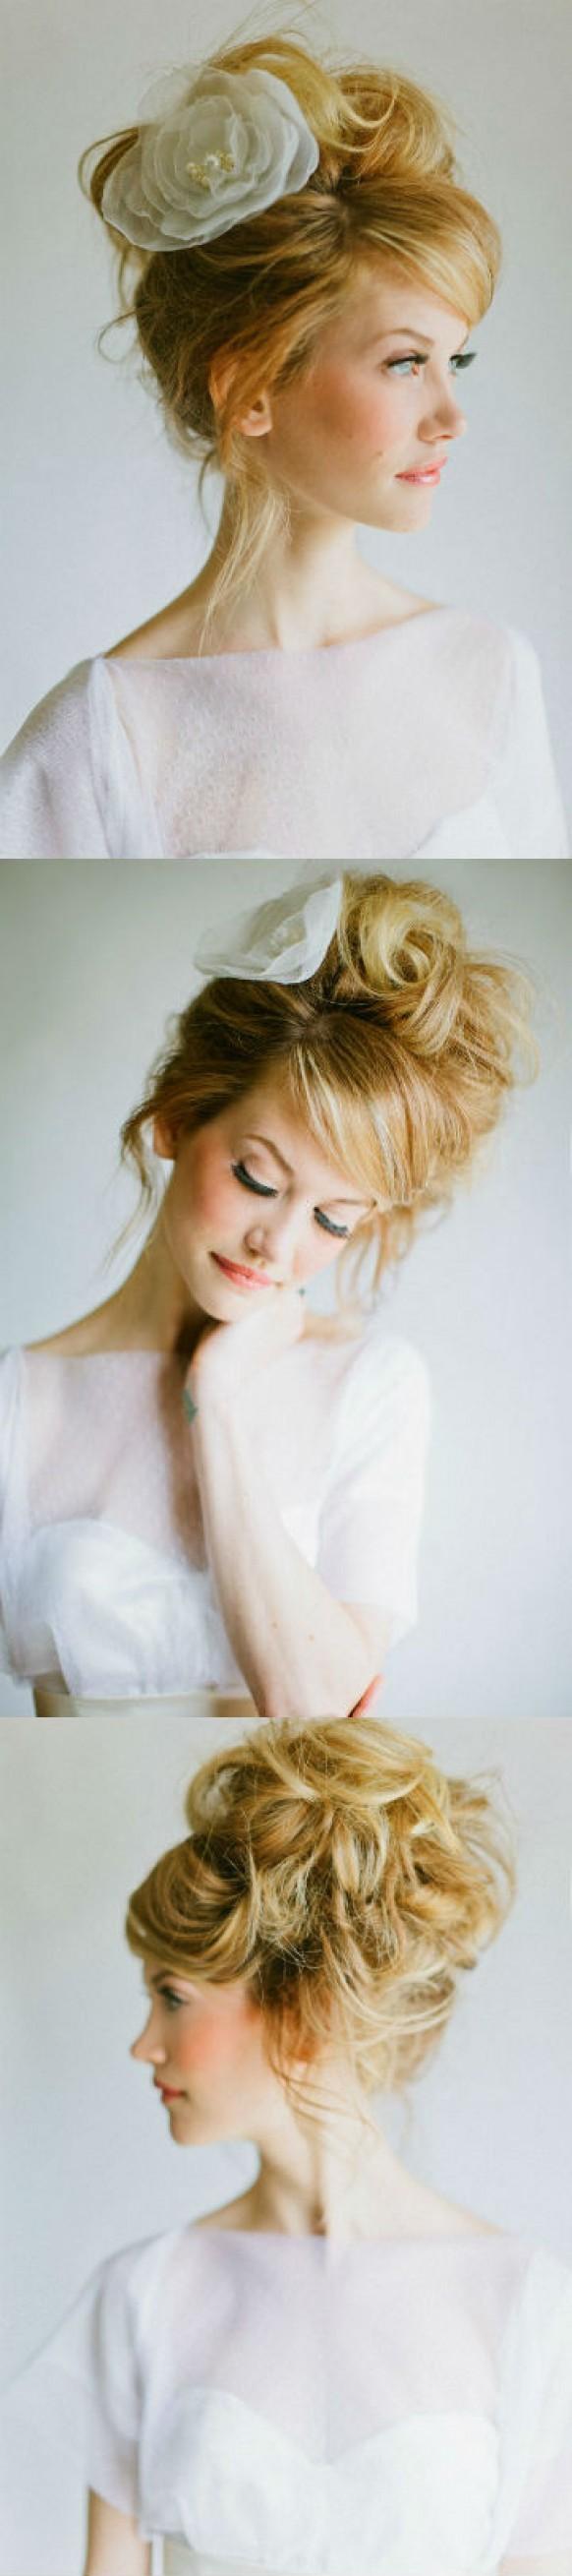 wedding photo - Romantique cheveux mariée de style avec grande rose accesorizes